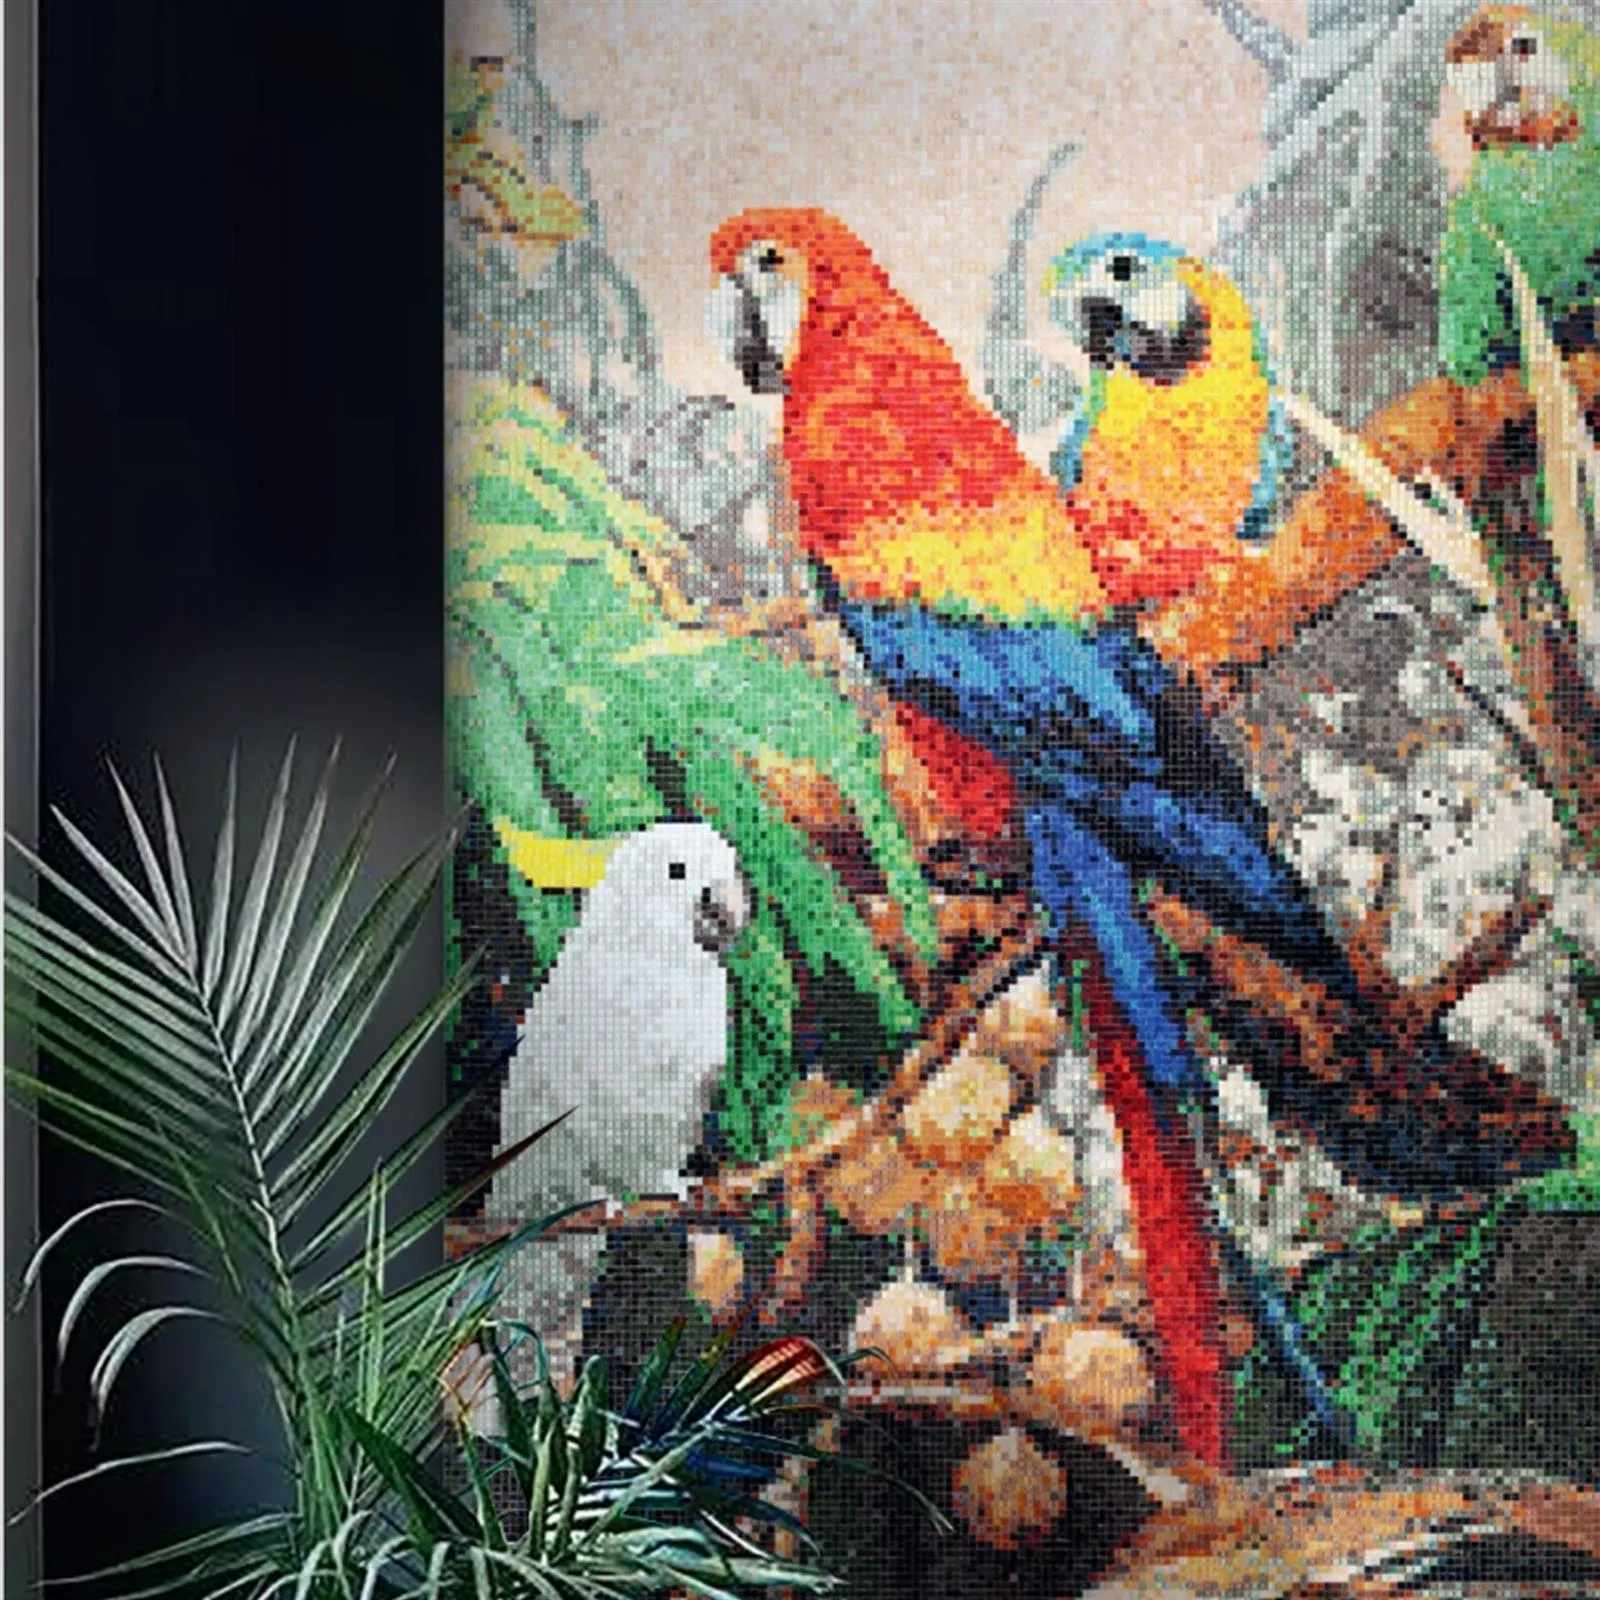 Mozaik Staklo Slika Parrots 150x326cm